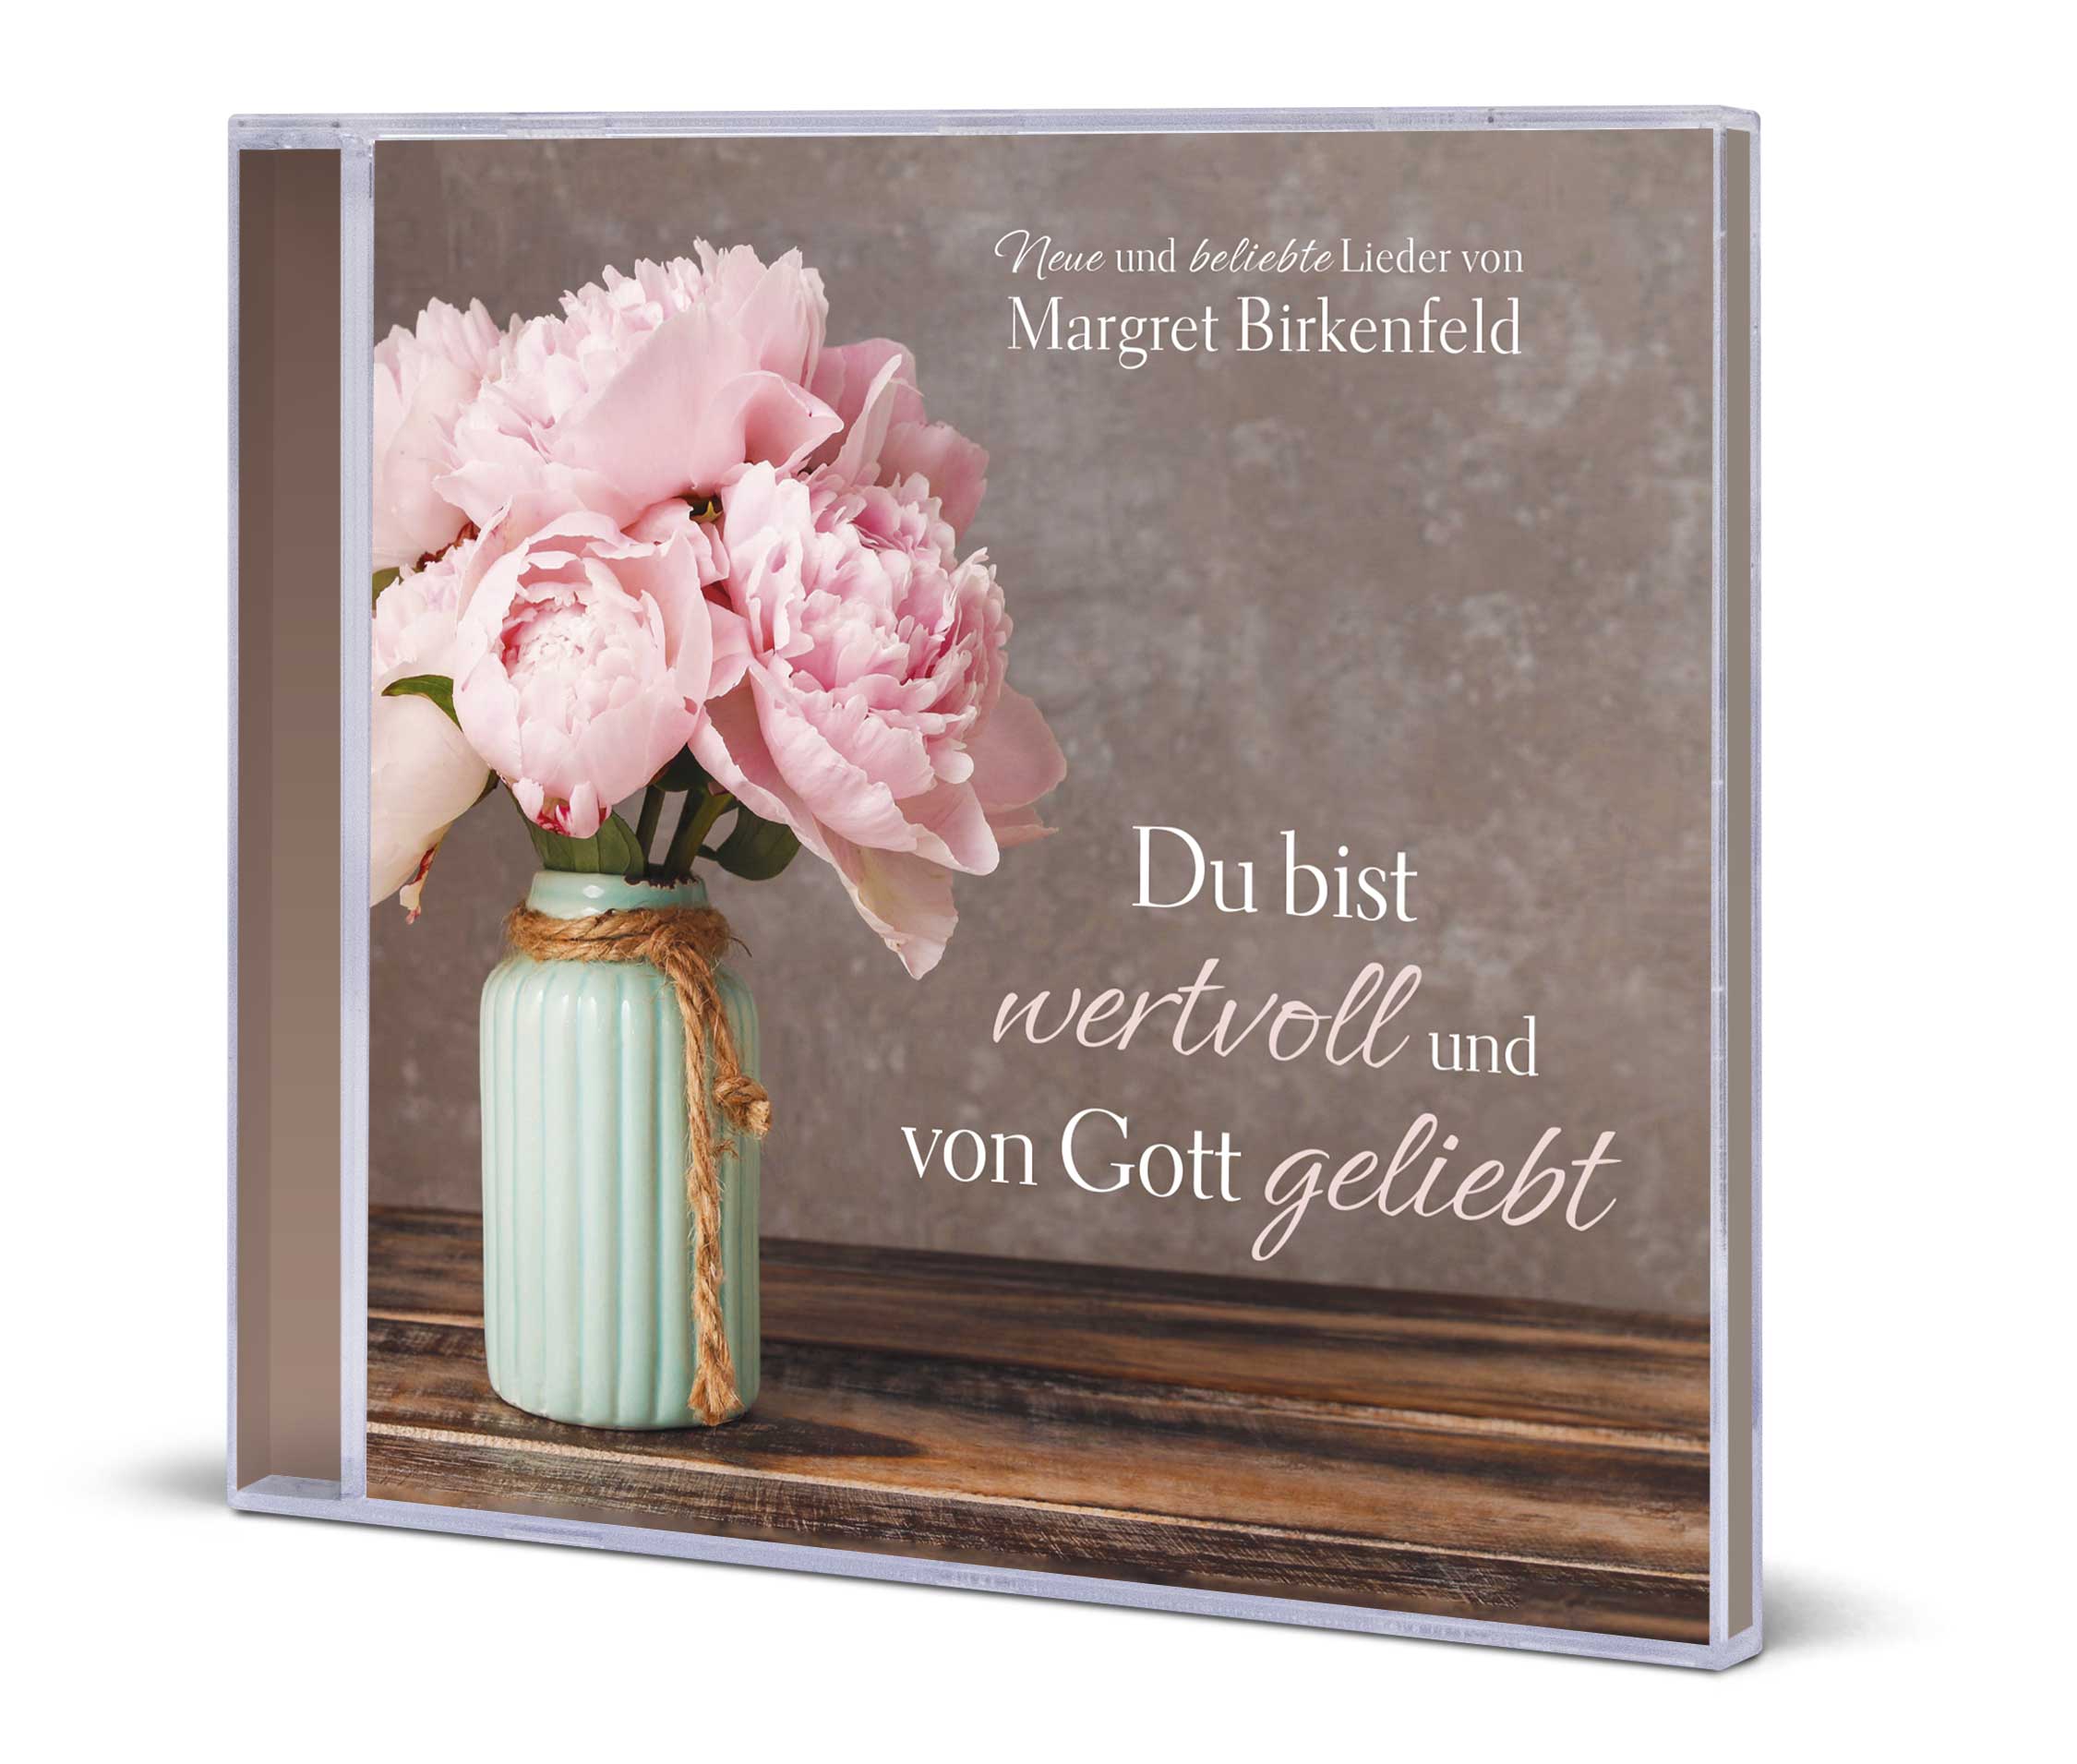 Margret Birkenfeld: Du bist wertvoll und von Gott geliebt - CD